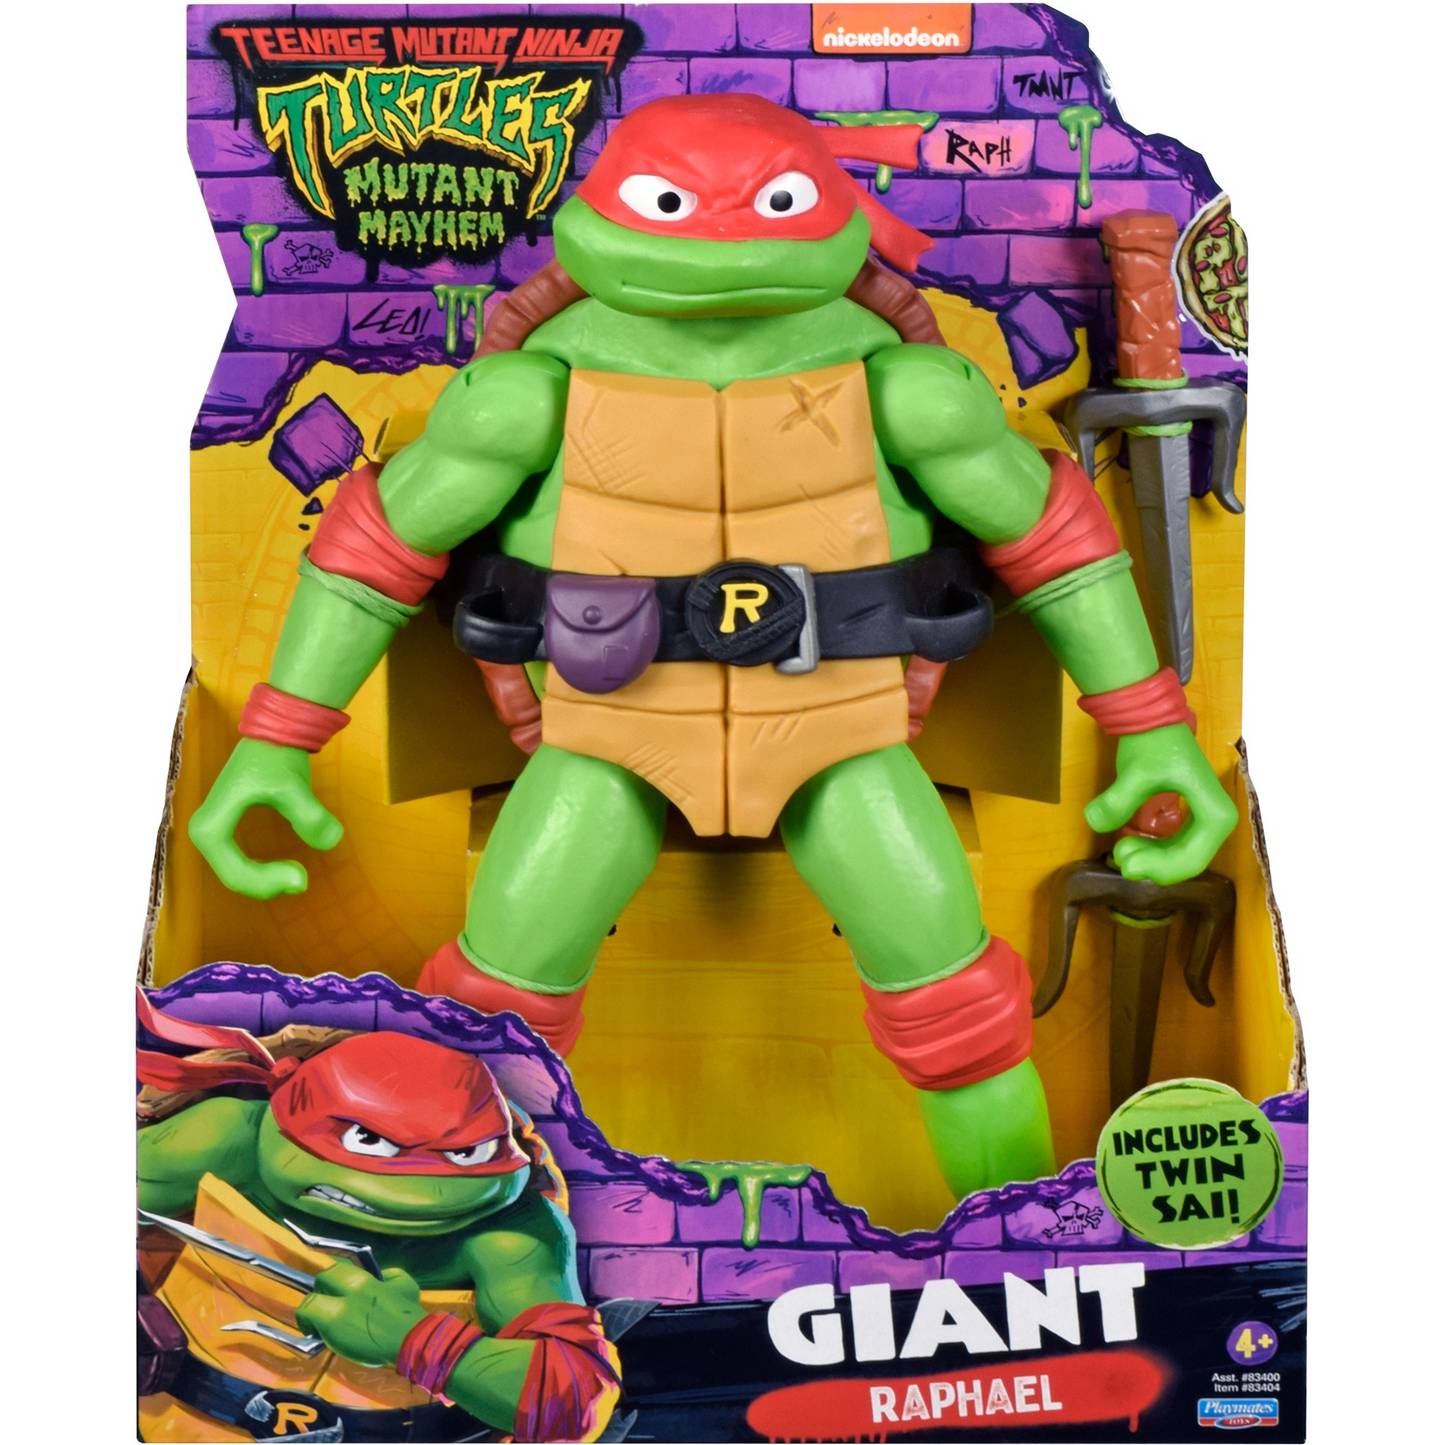 Teenage Mutant Ninja Turtles: Mutant Mayhem: Raphael: Big Size Action Figure